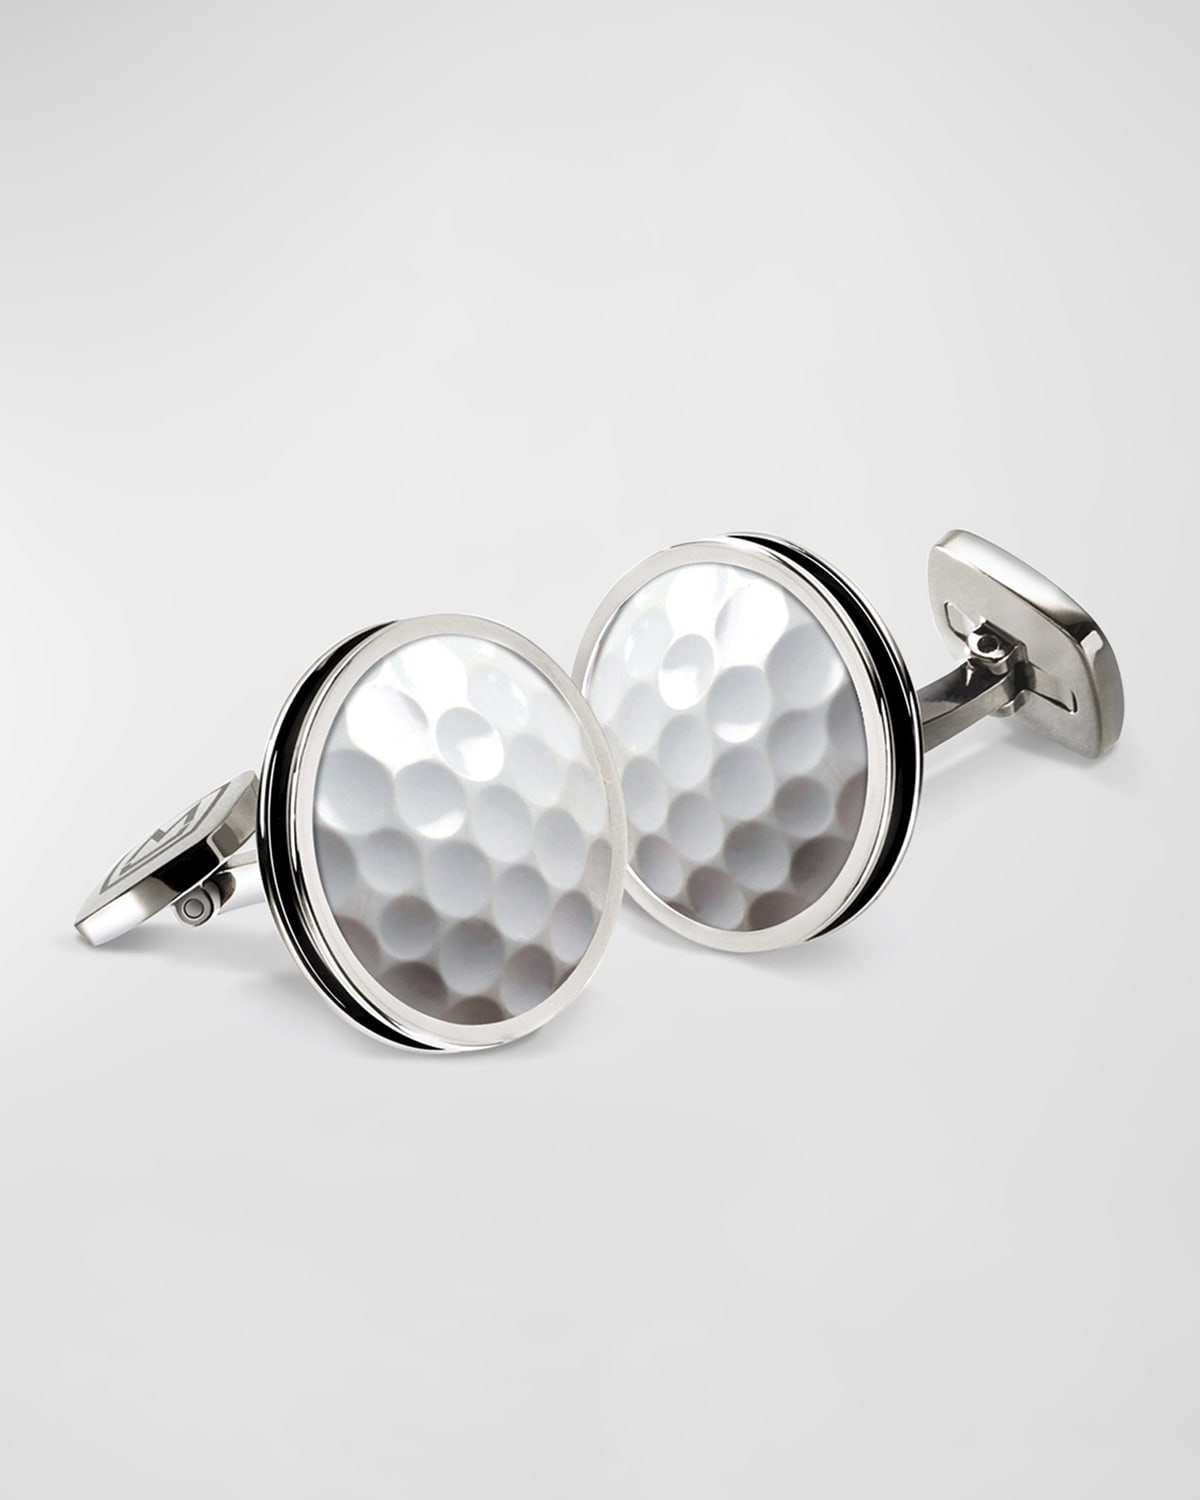 M Clip Men's Stainless Steel Golf Ball Round Cufflinks